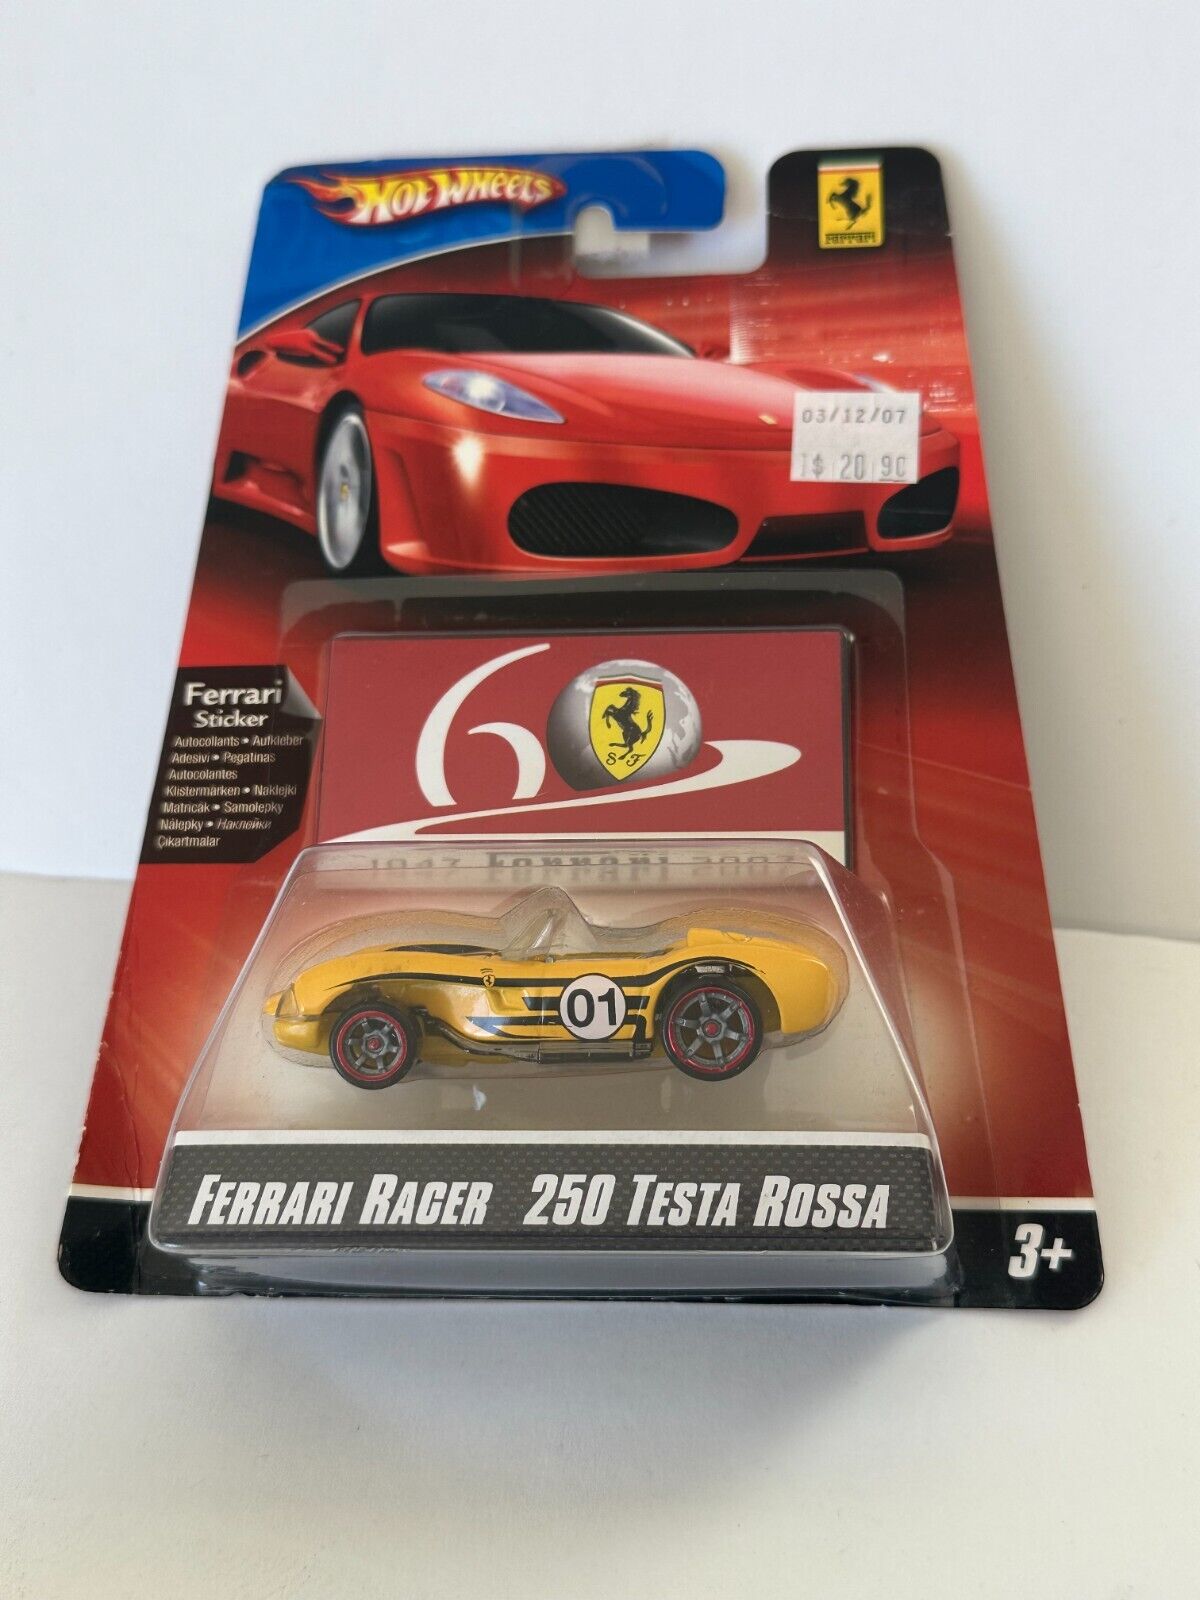 Hot Wheels Ferrari Racer 250 Testa Rossa Yellow V73